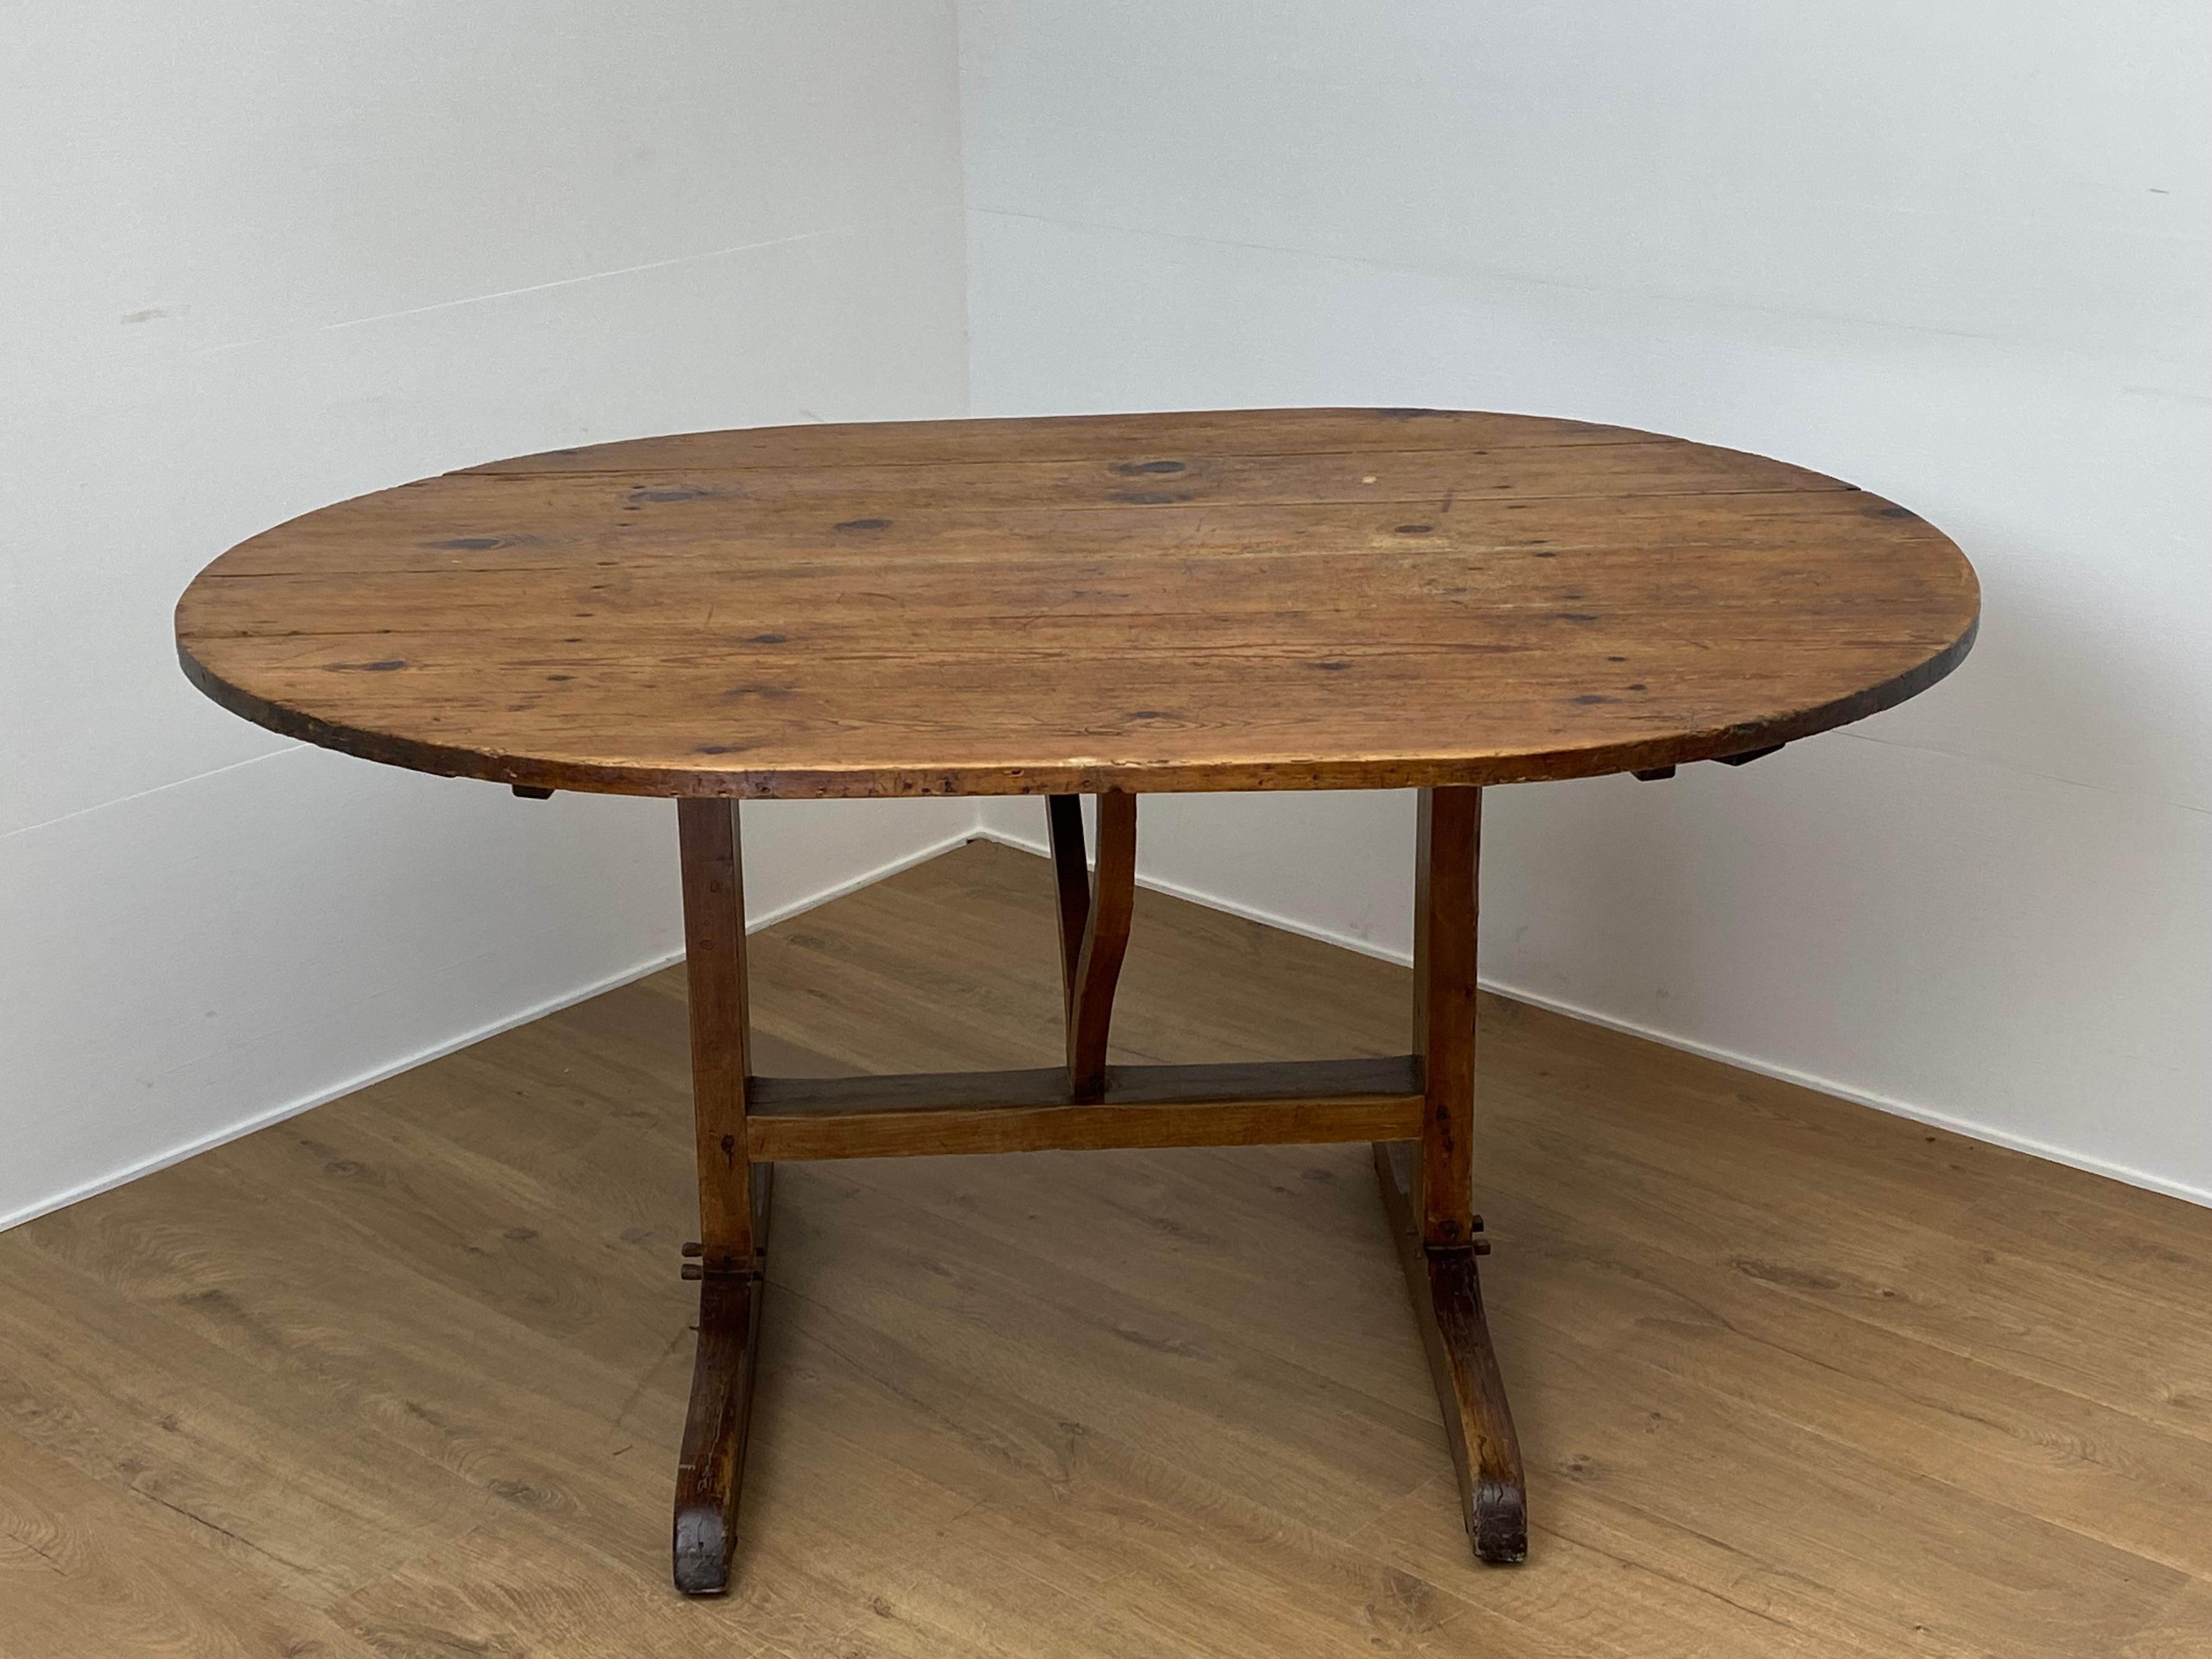 Schöner ovaler Vigneron-Tisch aus Frankreich in einem Kiefernholz,
aus der Zeit um 1920, ovale Sonderform, fester Tisch,
gute alte, ursprüngliche Patina und Glanz des Holzes,
kann an verschiedenen Stellen platziert werden 